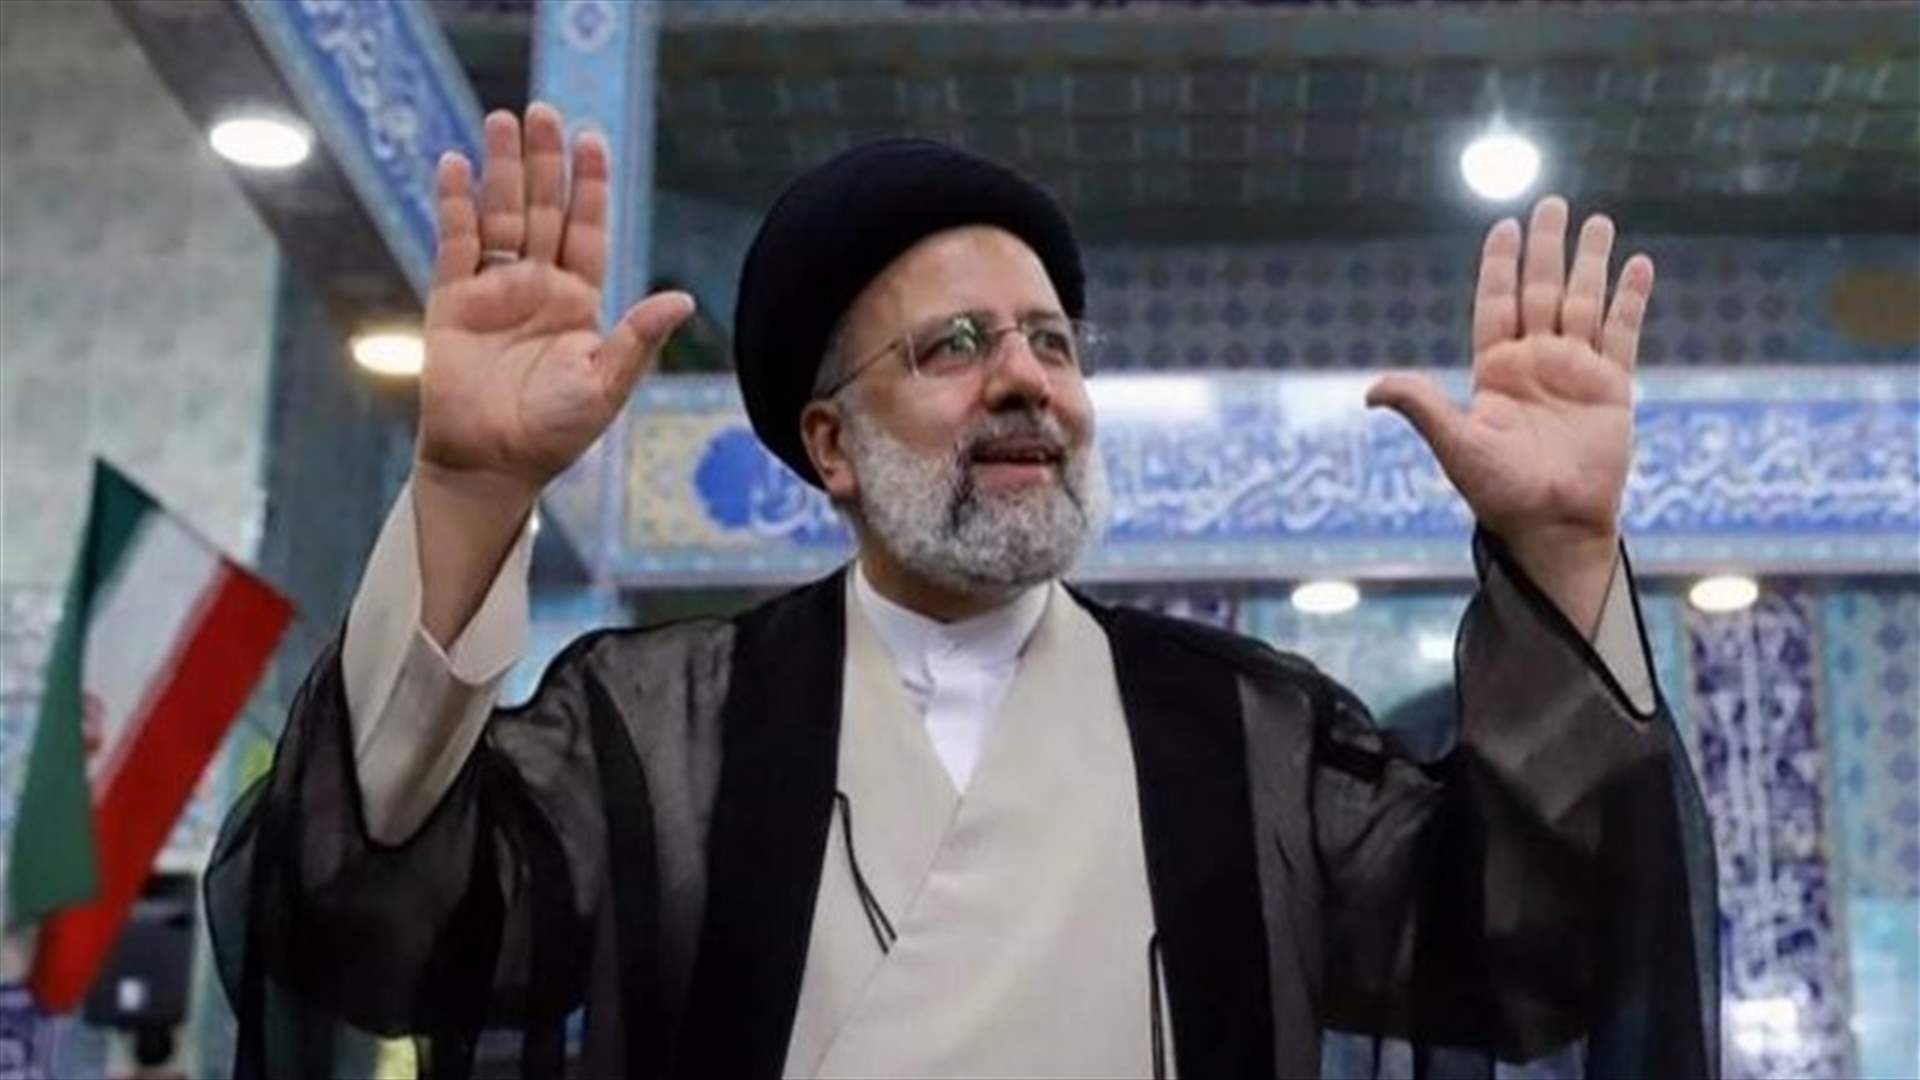 إبراهيم رئيسي يؤدي اليمين الدستورية رئيسا للجمهورية في إيران